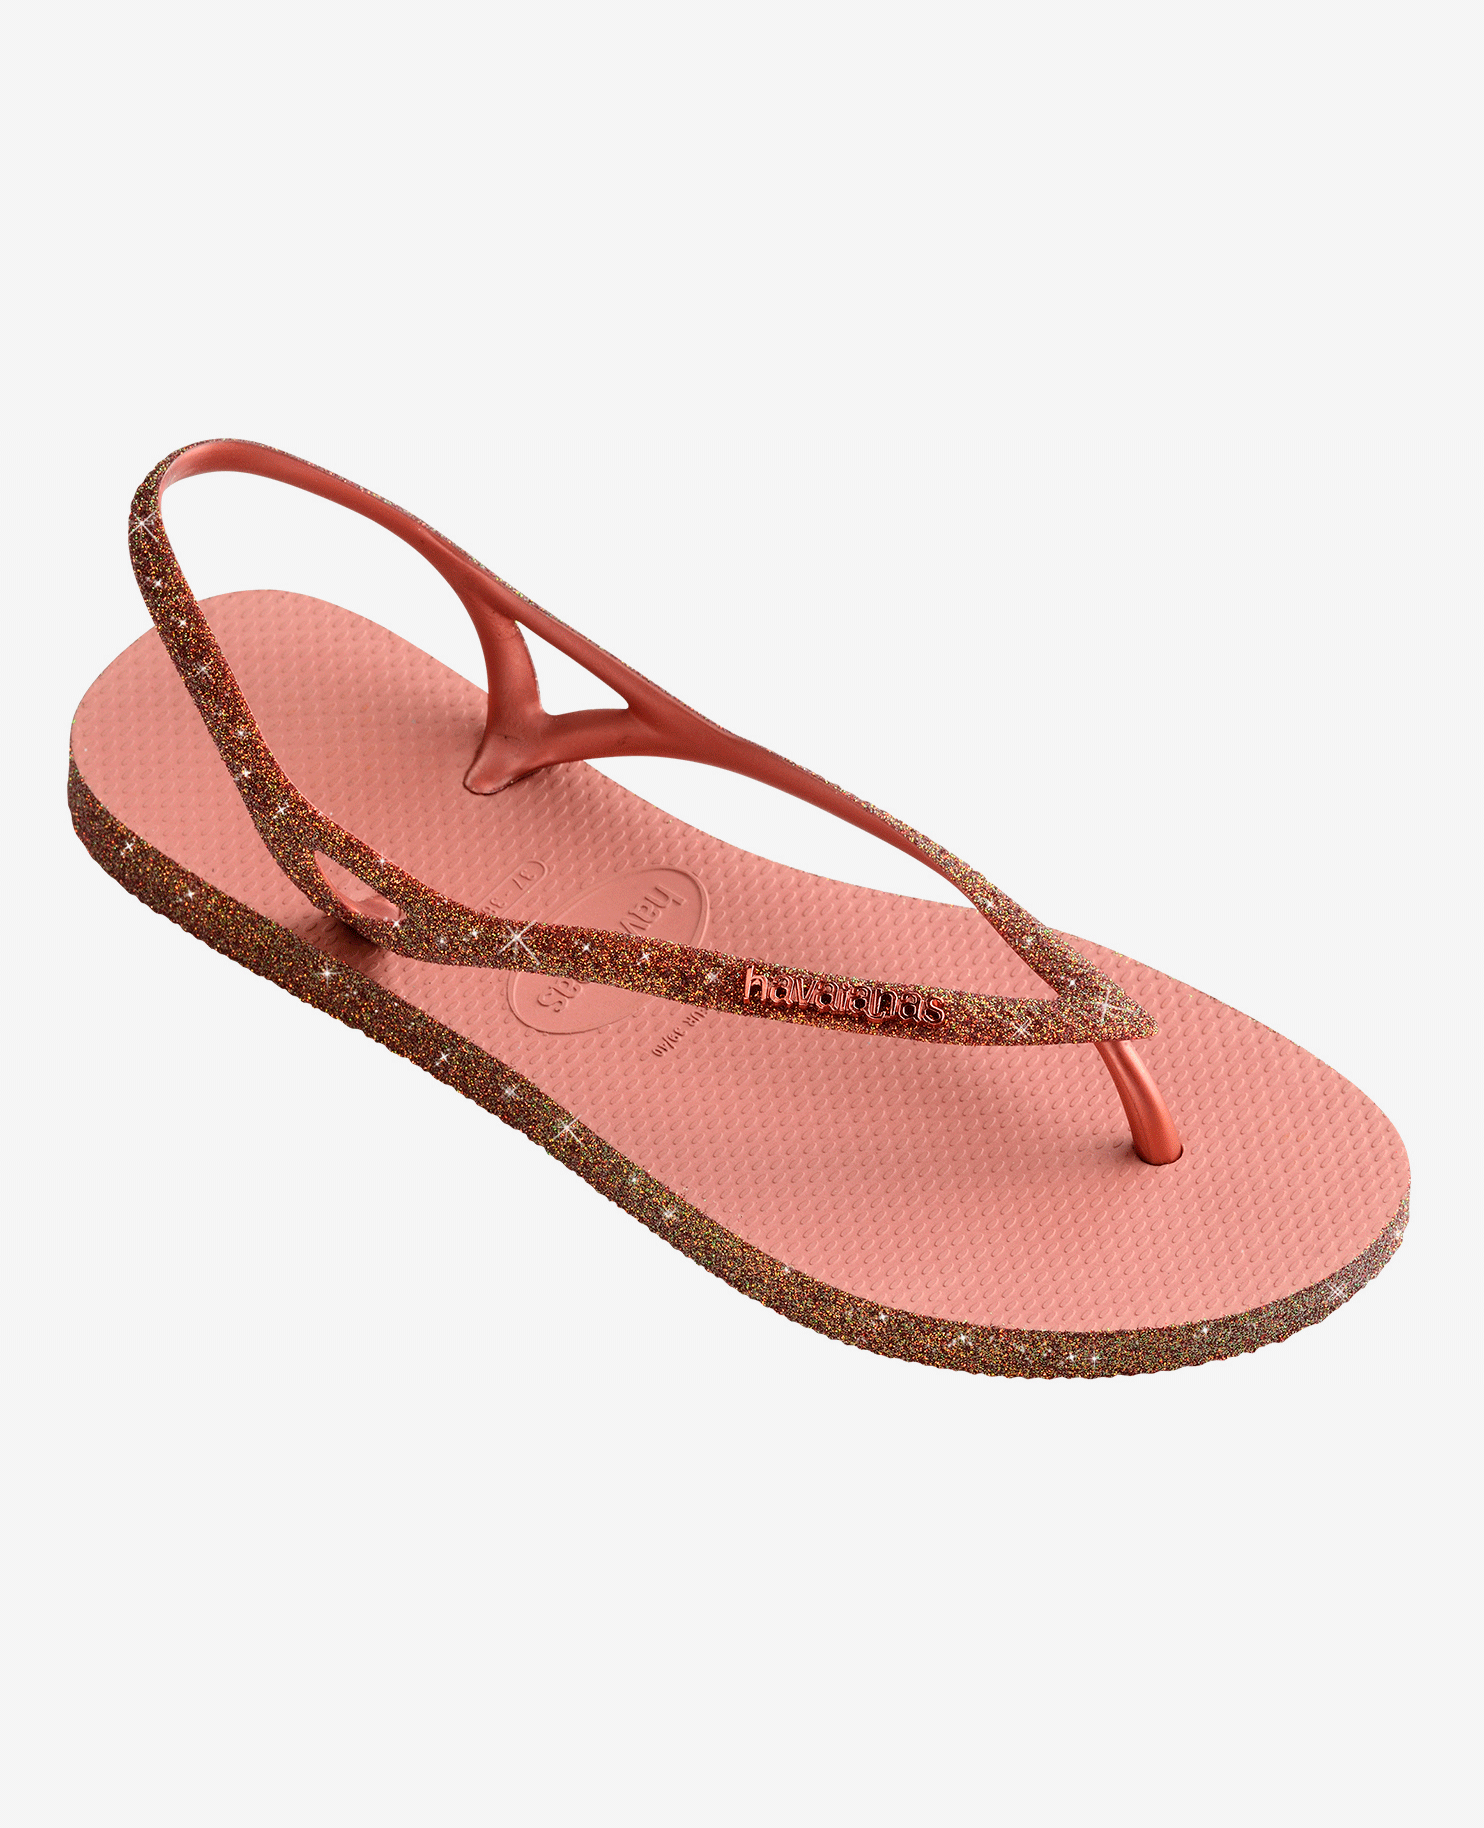 Tongs à effet métallisé Caoutchouc Havaianas en coloris Métallisé Femme Chaussures Chaussures plates Sandales et claquettes 